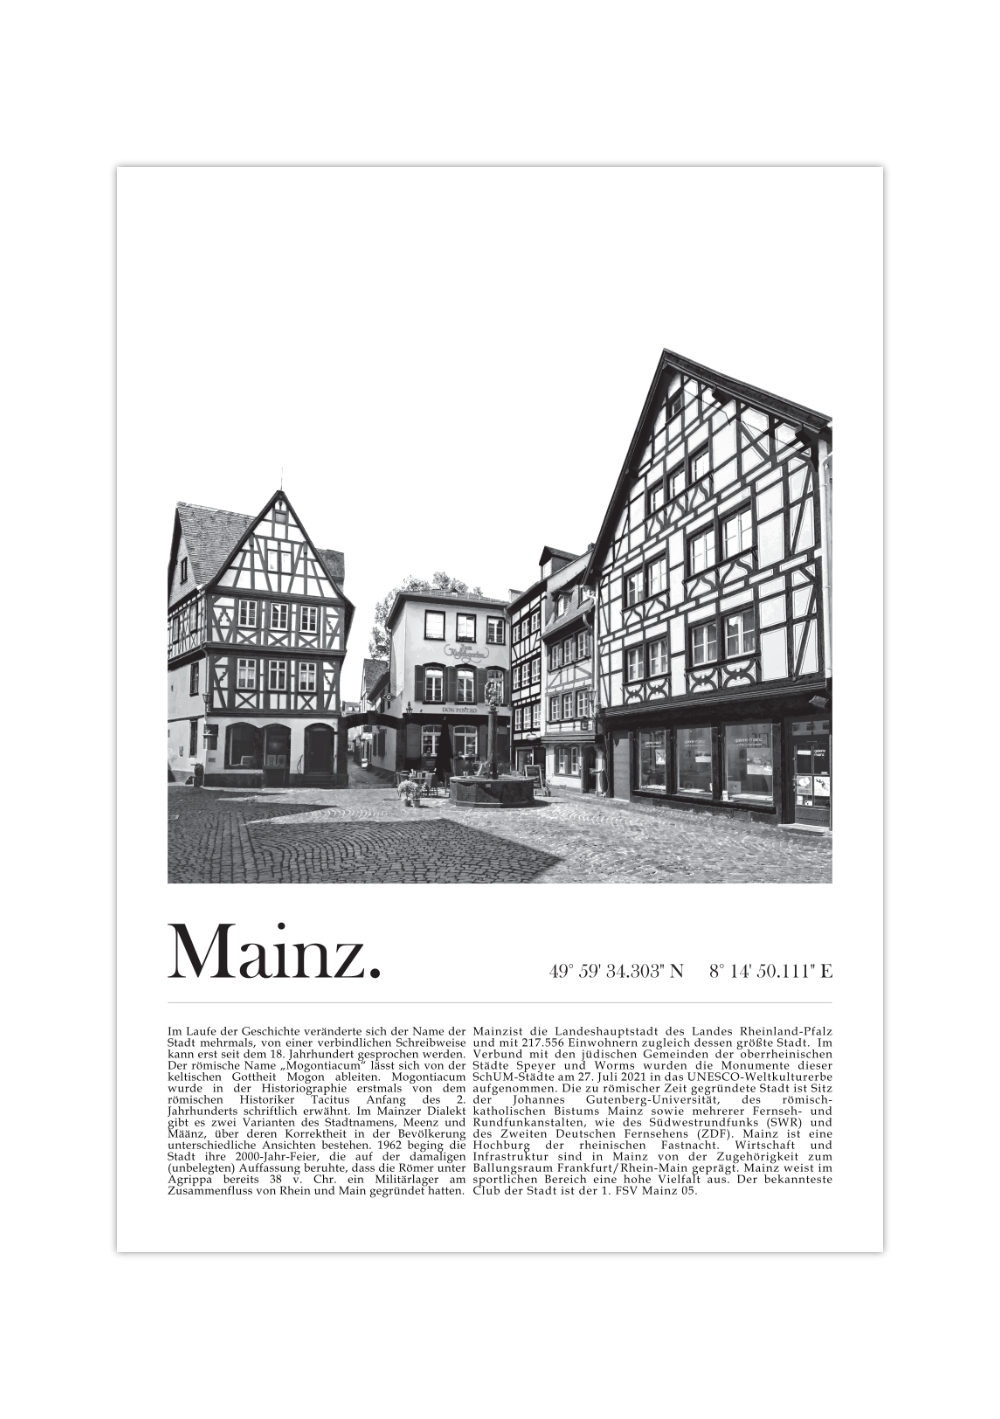 Dieses Poster zeigt dir in Schwarz Weiß eine Fotografie der Altstadt der Landeshauptstadt Mainz in Rheinland-Pfalz. 